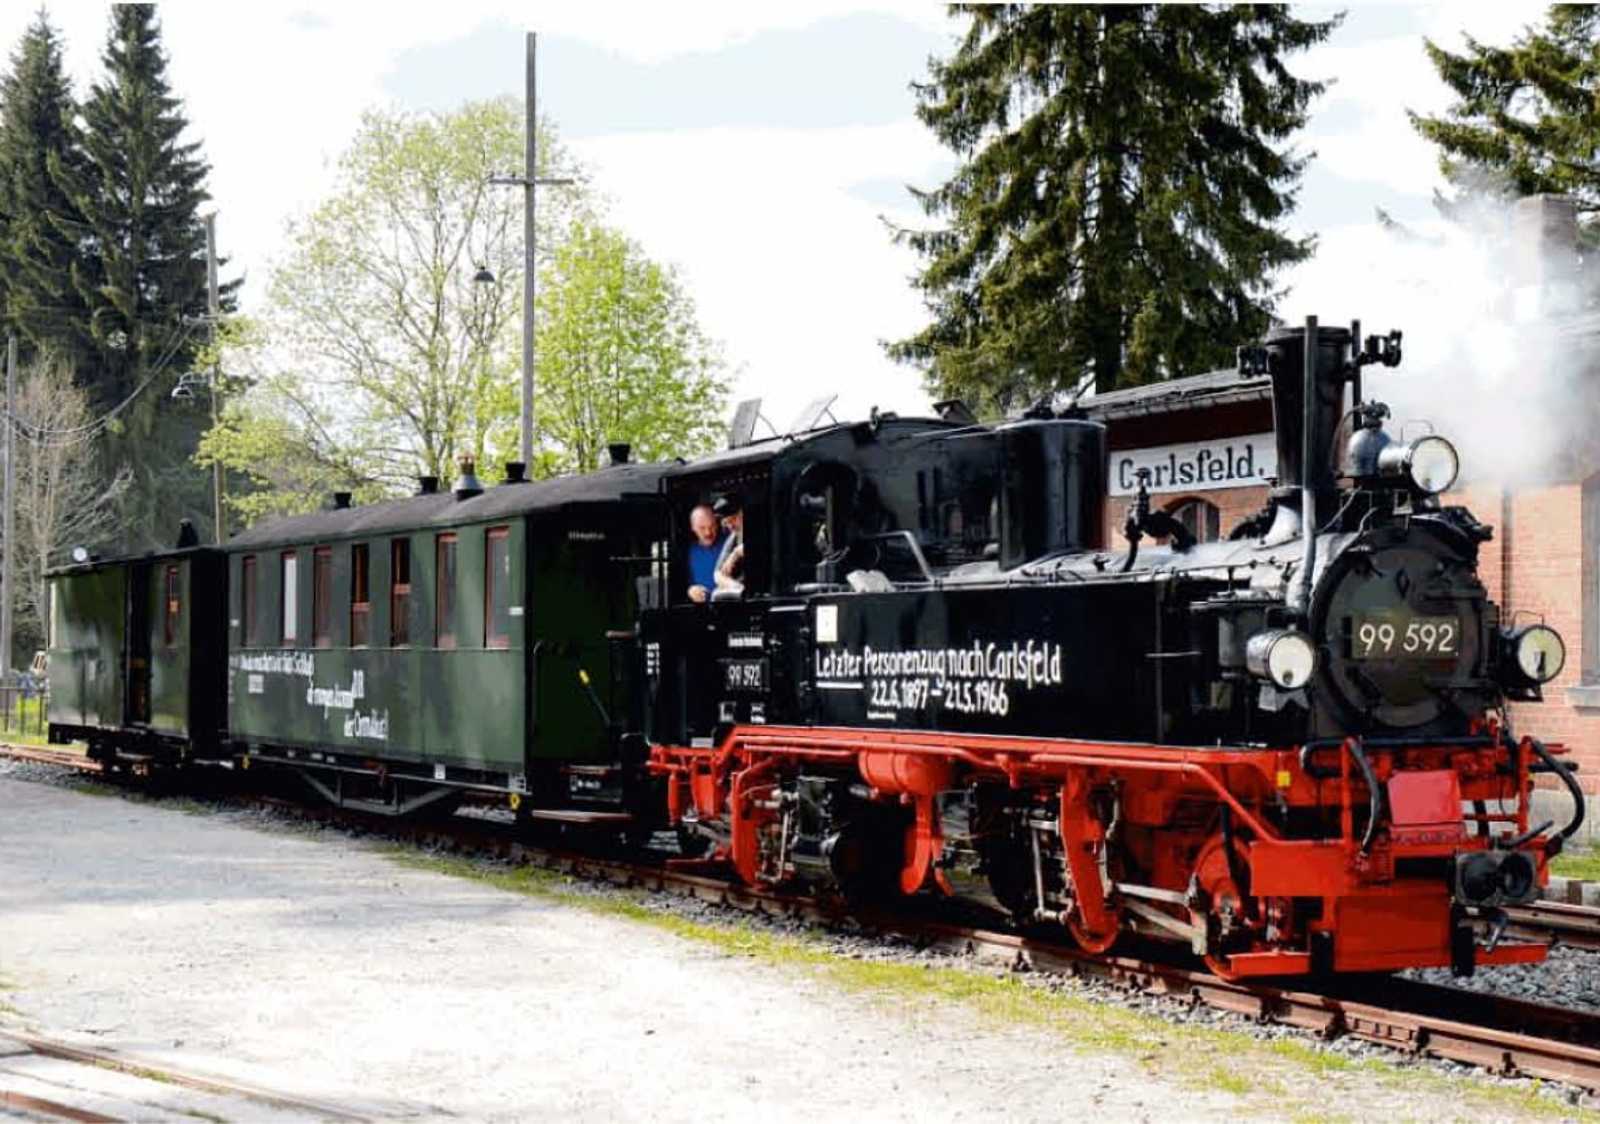 Der Gmp 11698 als letzter Zug mit Personenbeförderung nach Carlsfeld wurde am 21. Mai 1966 gegen 20.15 Uhr im Bahnhof Schönheide Süd zur Abfahrt nach Carlsfeld abgefertigt. Auf den Tag genau ein halbes Jahrhundert später steht der nachgestellte letzte Zug nach Carlsfeld im Endbahnhof der WCd-Linie